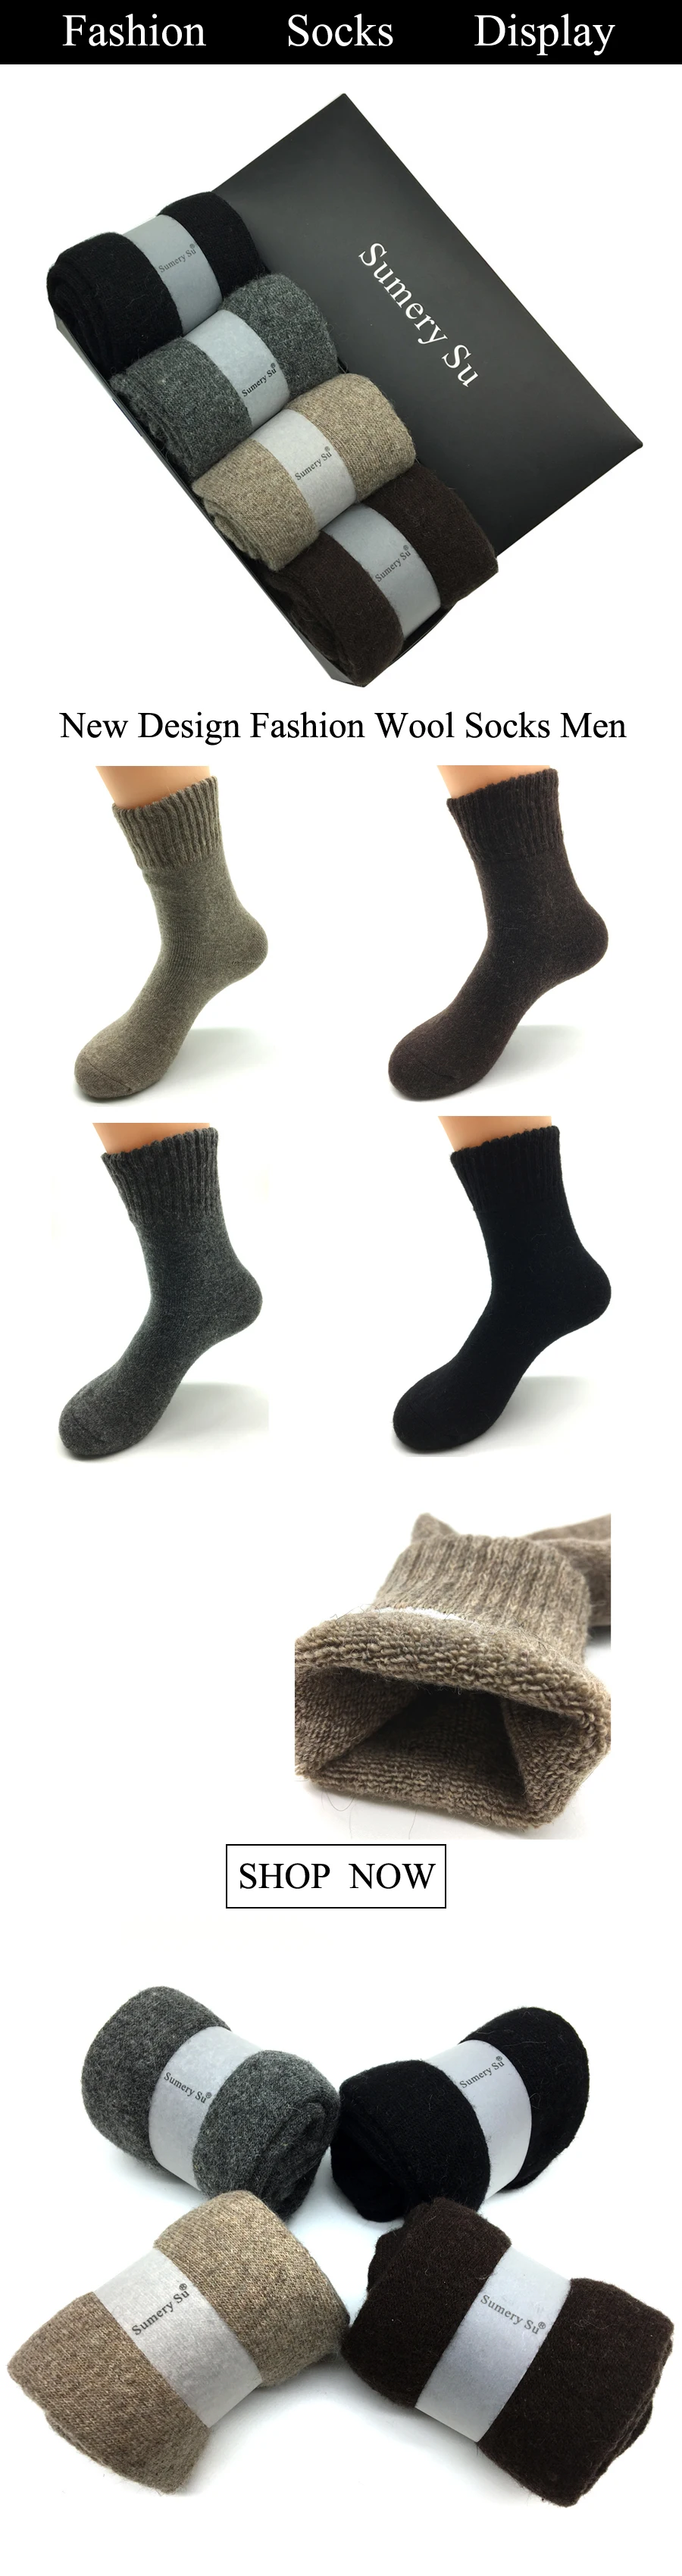 4 пар/кор. новые зимние толстые шерстяные носки Для мужчин бренд мода кашемир Дышащие носки Meias Мужской 4 цвета 2018 Лидер продаж